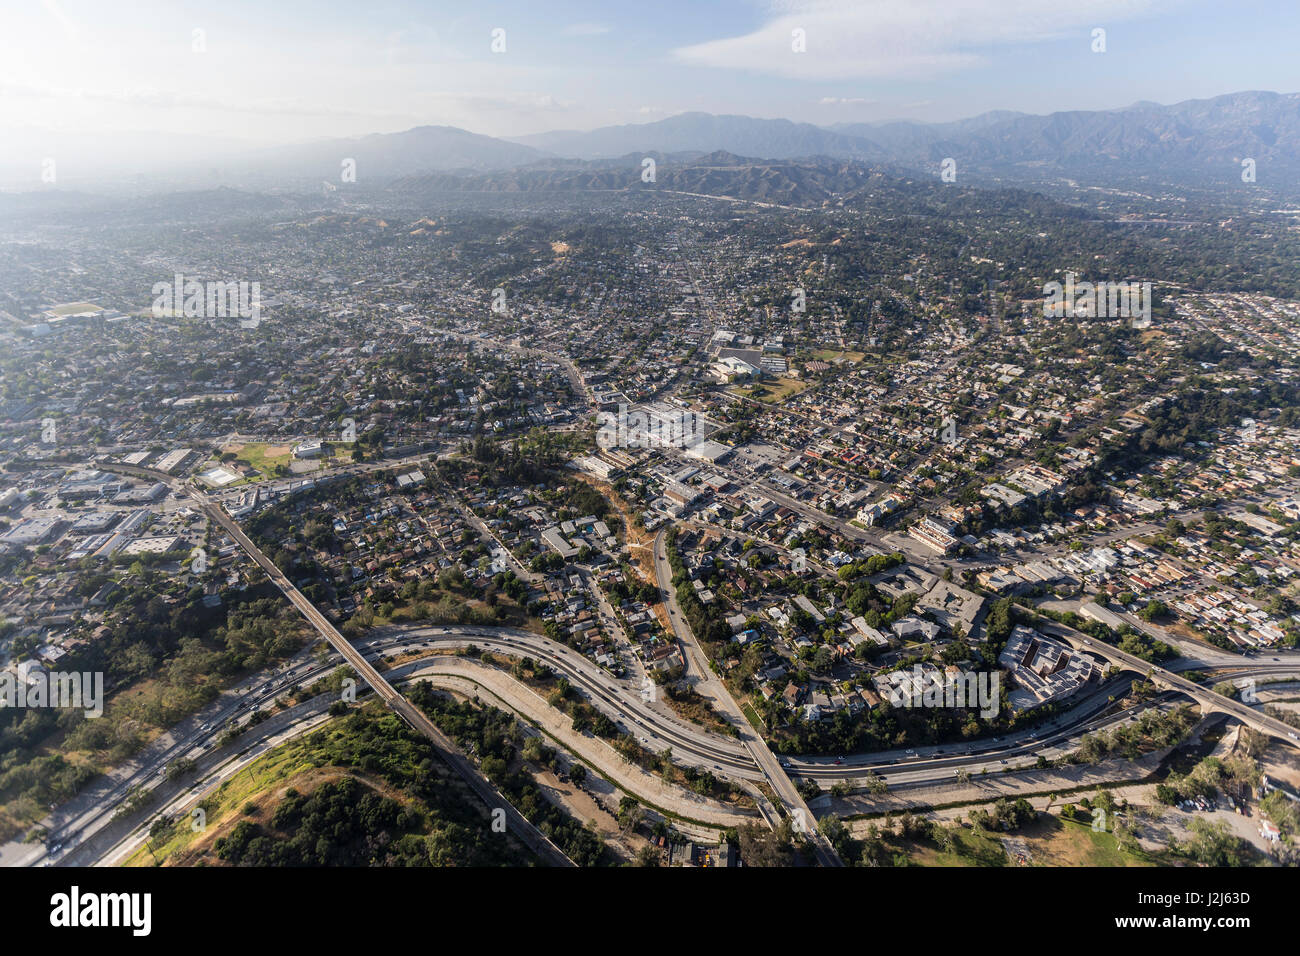 Pomeriggio Vista aerea del quartiere di Highland Park nella zona nord-est di Los Angeles in California. Foto Stock